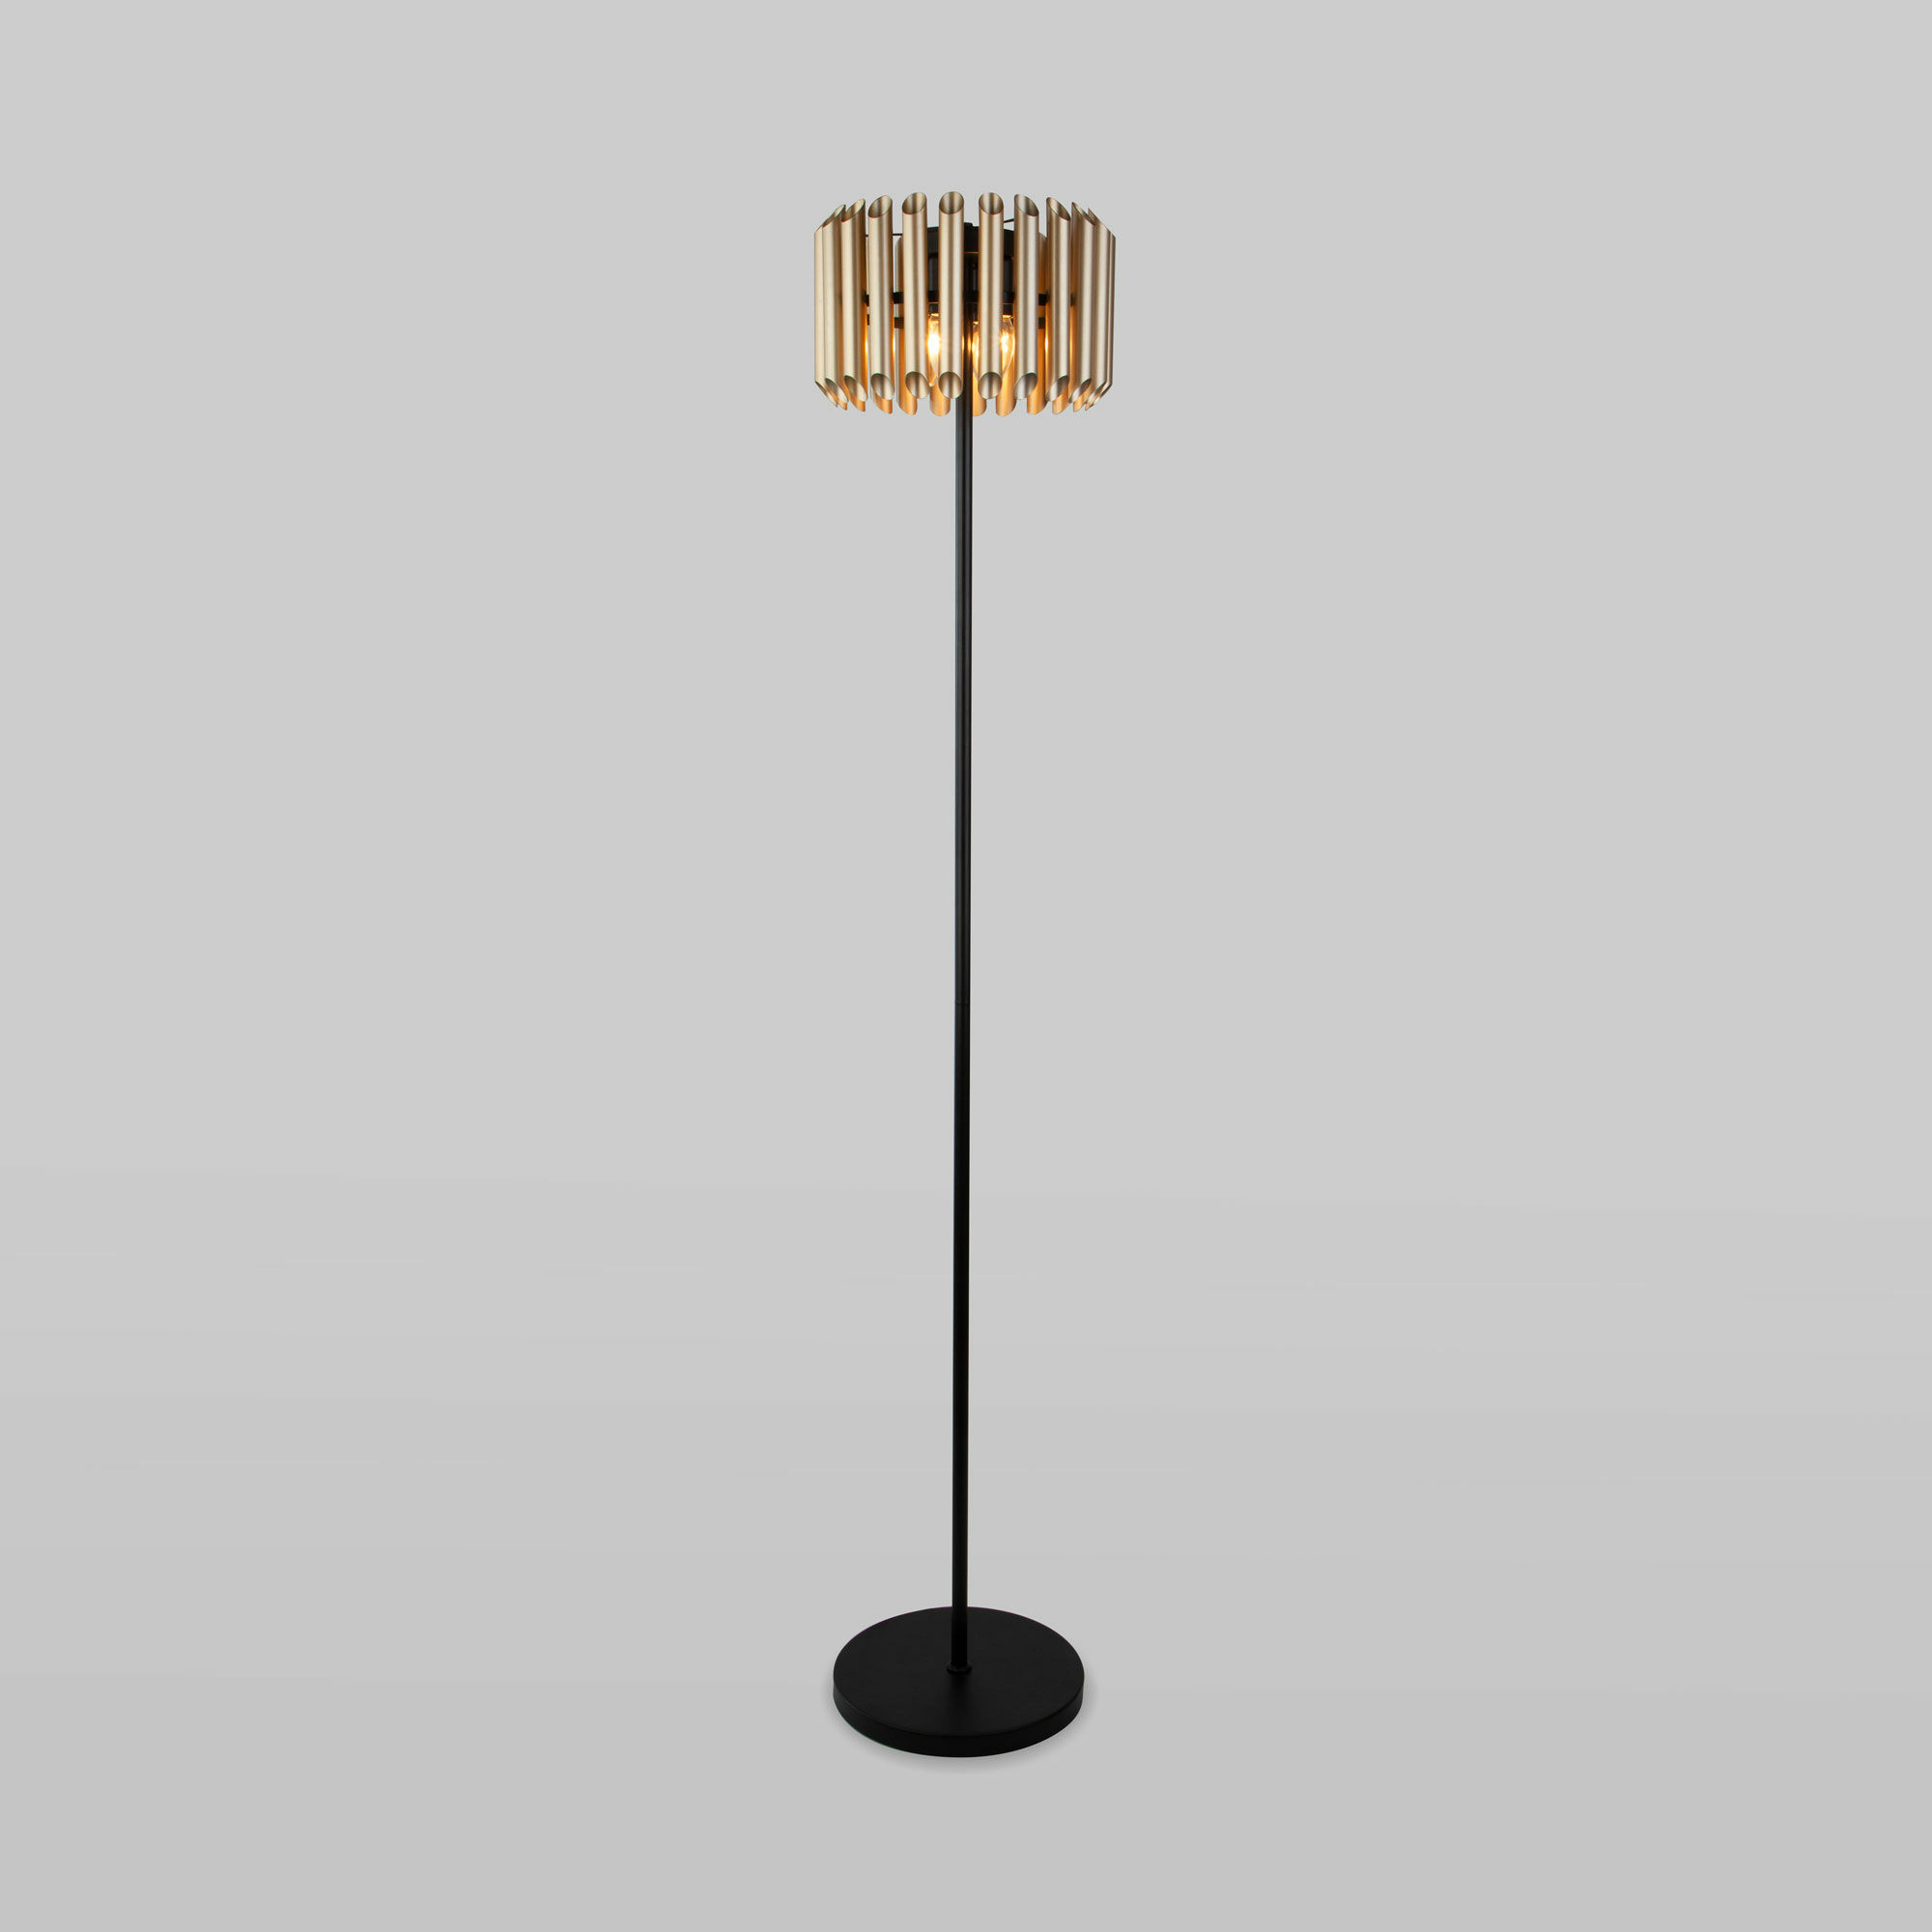 Напольный светильник с металлическим плафоном Bogate's Castellie 01106/4 черный / шампань. Фото 1